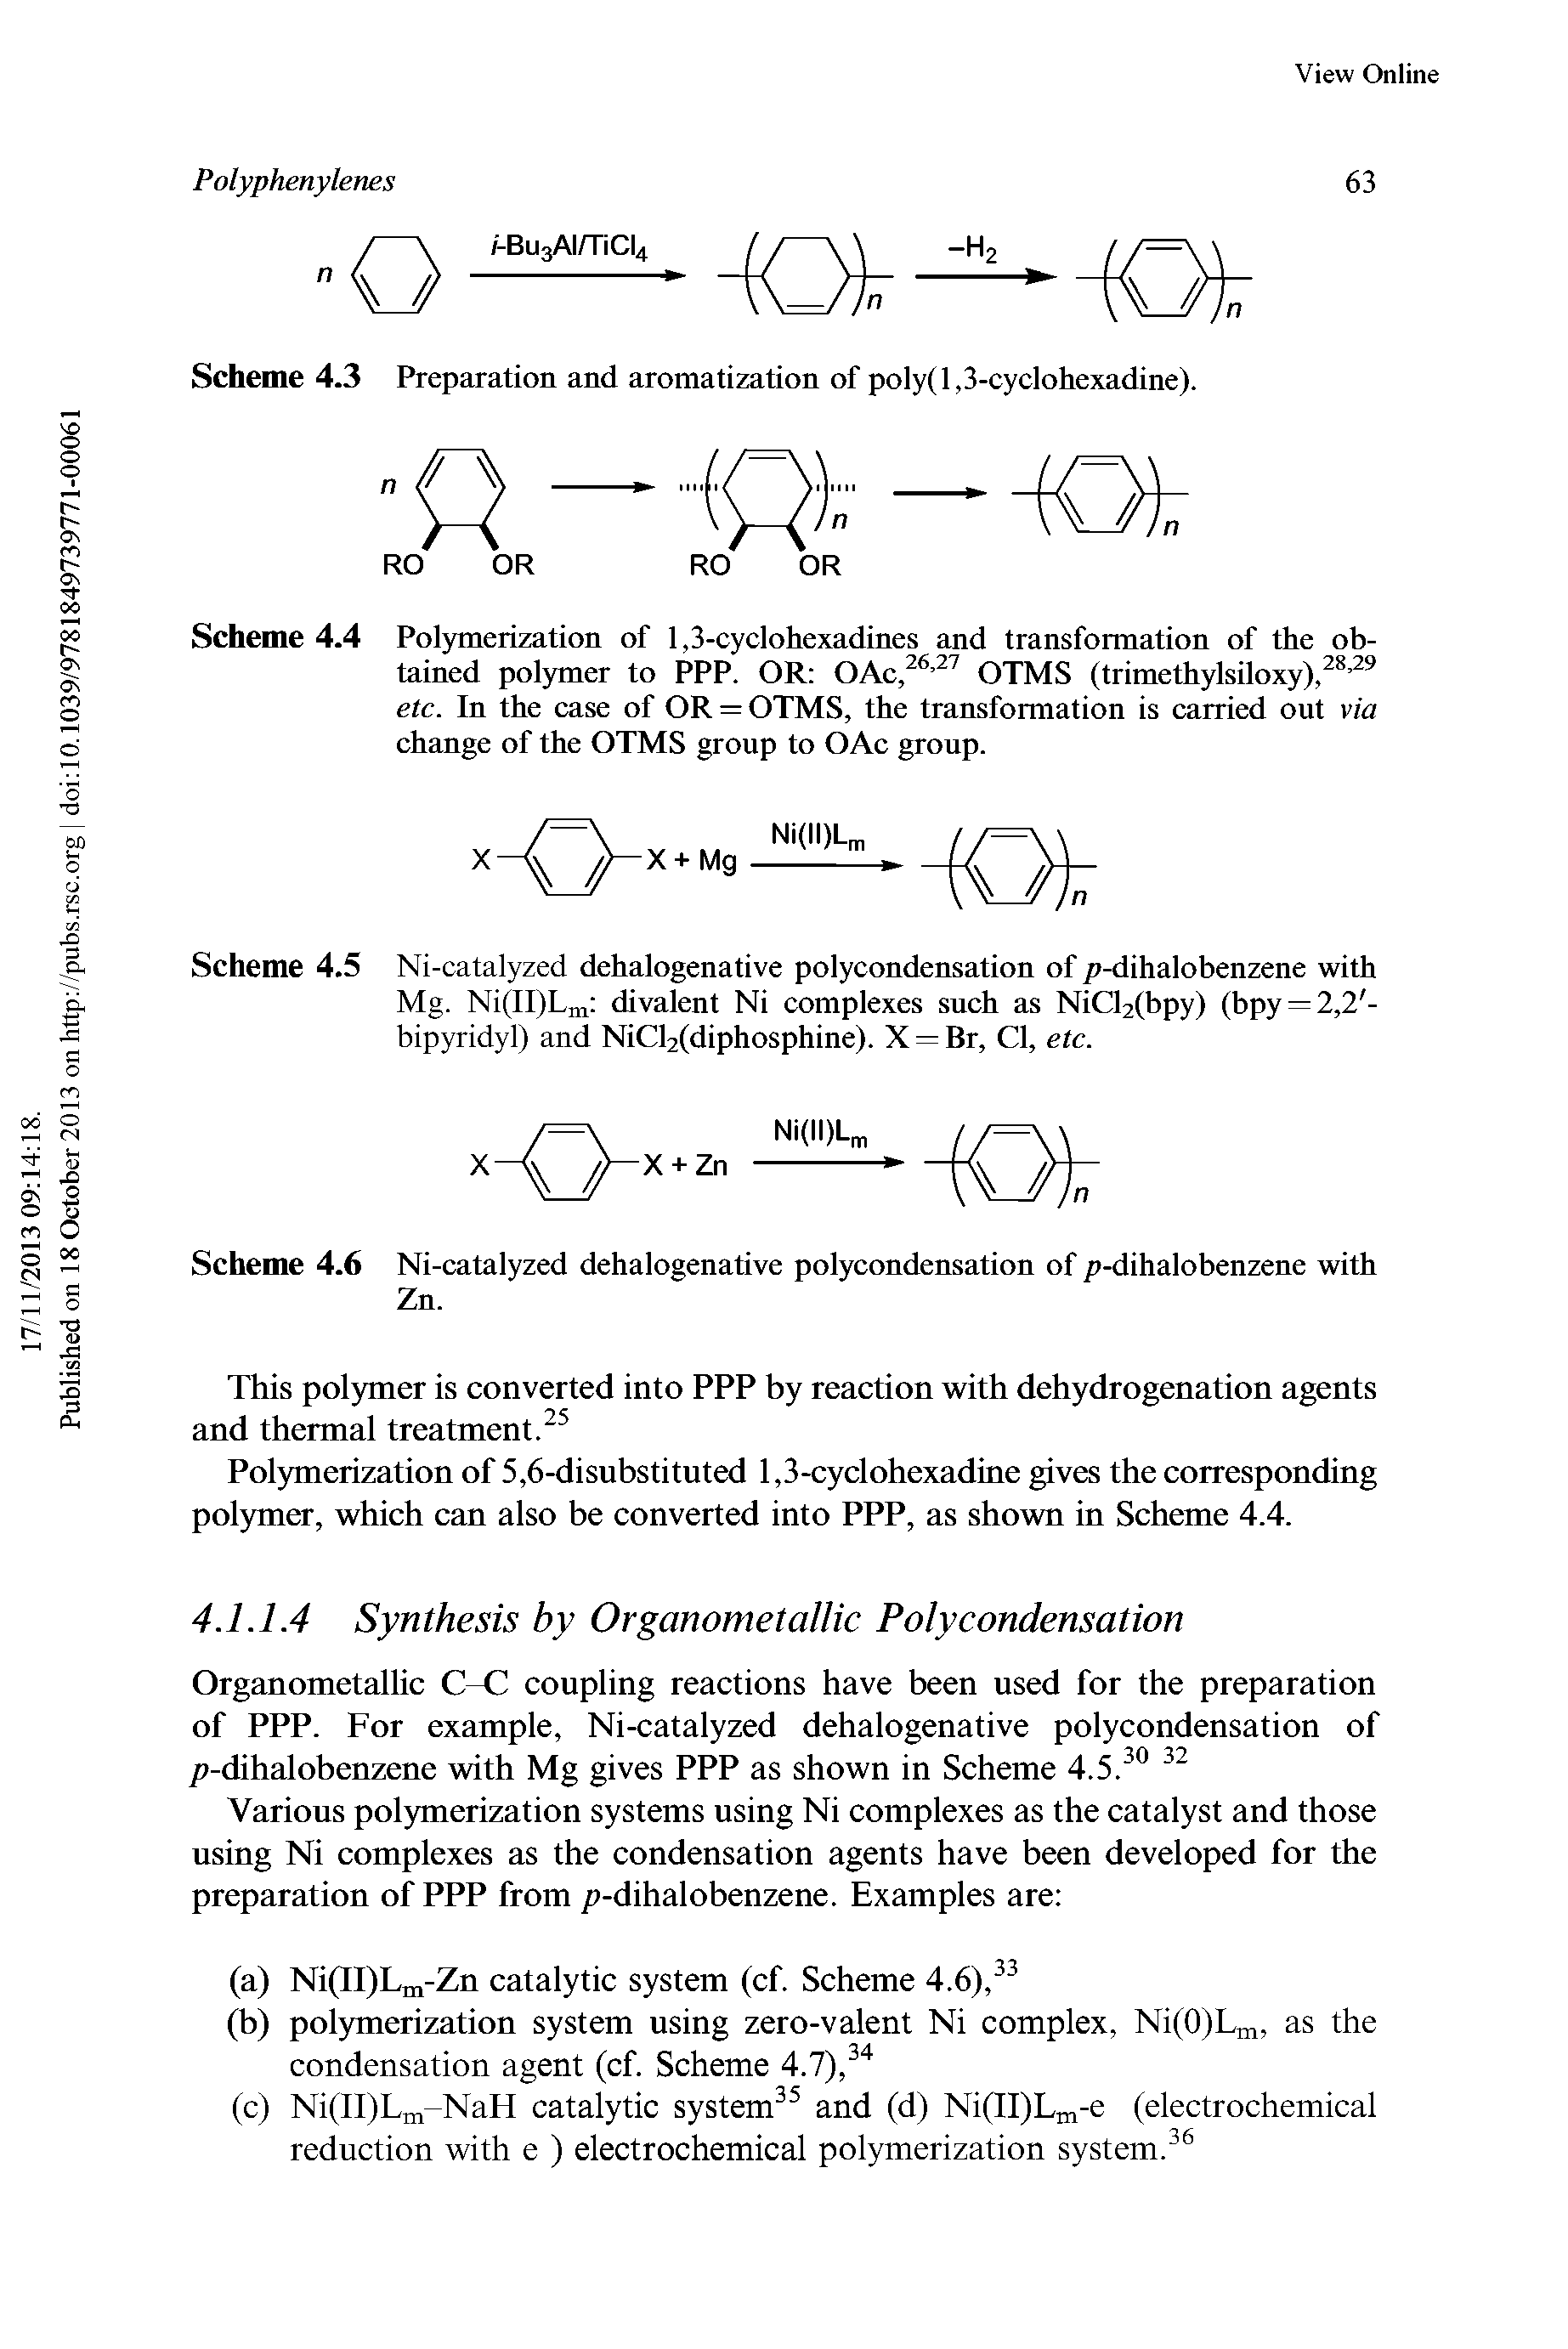 Scheme 4.6 Ni-catalyzed dehalogenative polycondensation of p-dihalobenzene with Zn.